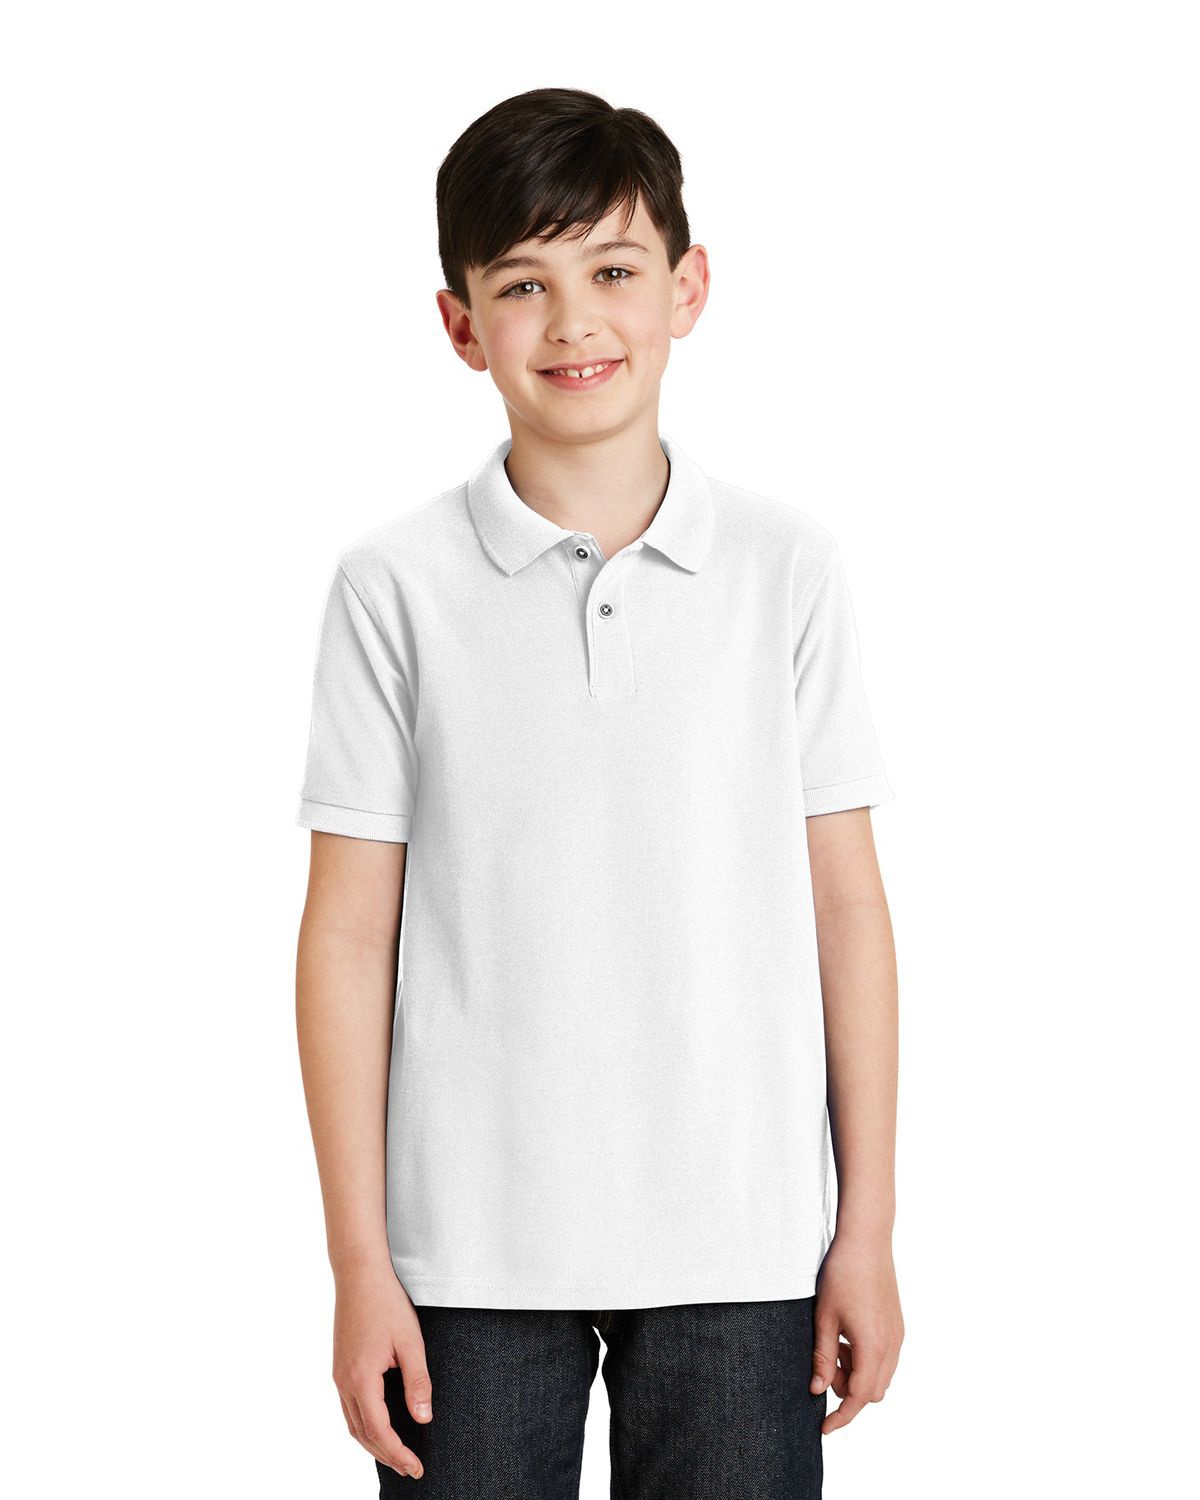  Lacoste unisex child Boys Short Sleeve Classic Pique Polo  Shirt, Mandarin Orange, 12 Years US: Clothing, Shoes & Jewelry